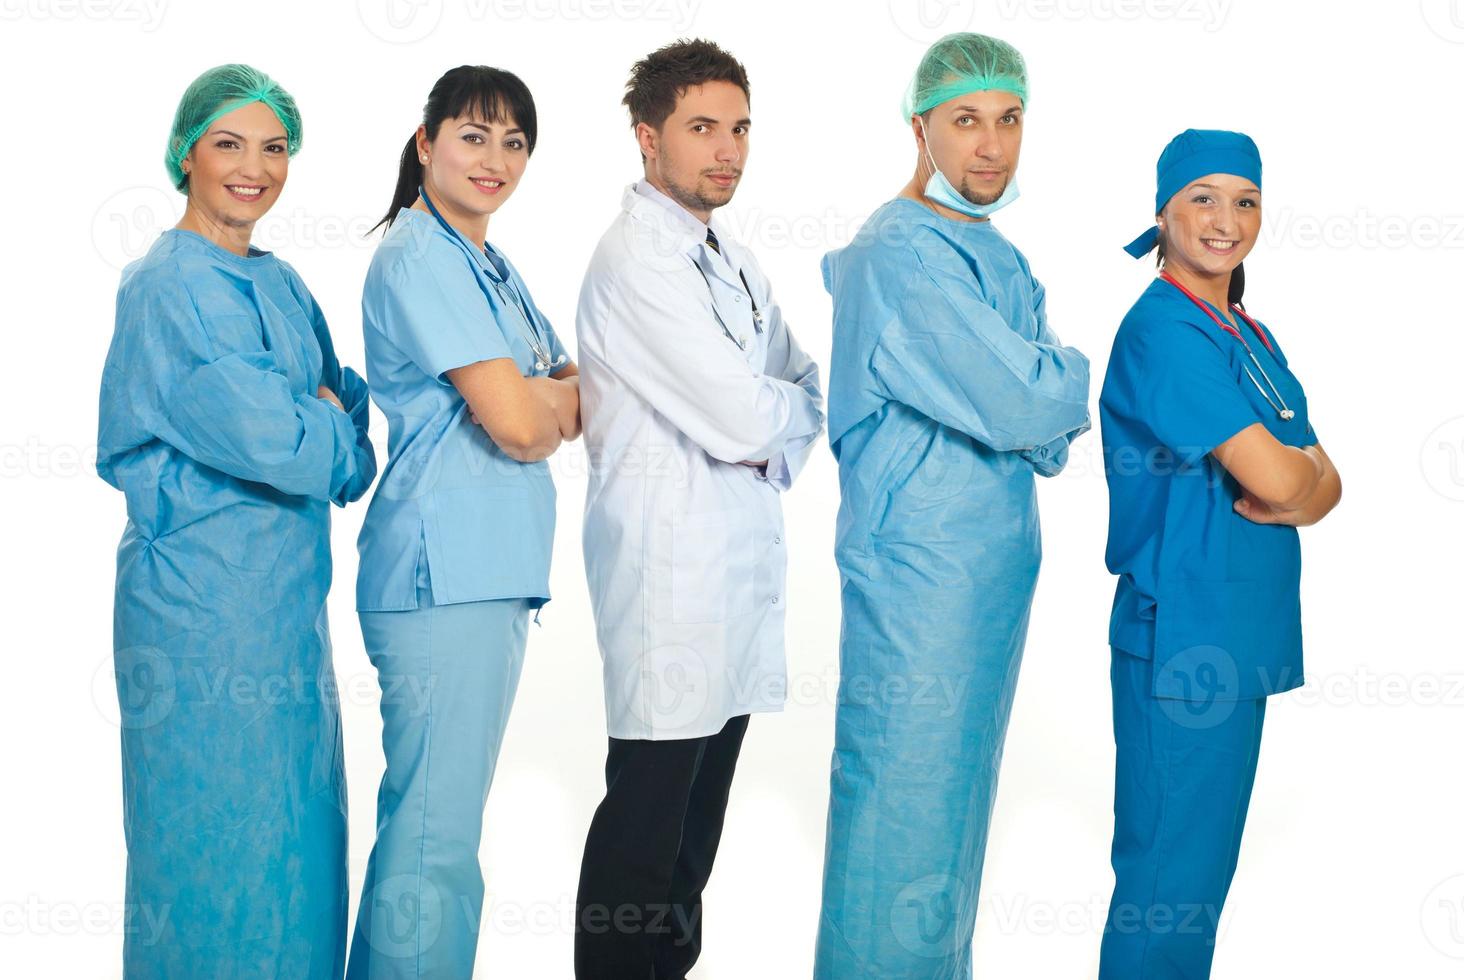 vijf artsen in profiel gevoerd foto